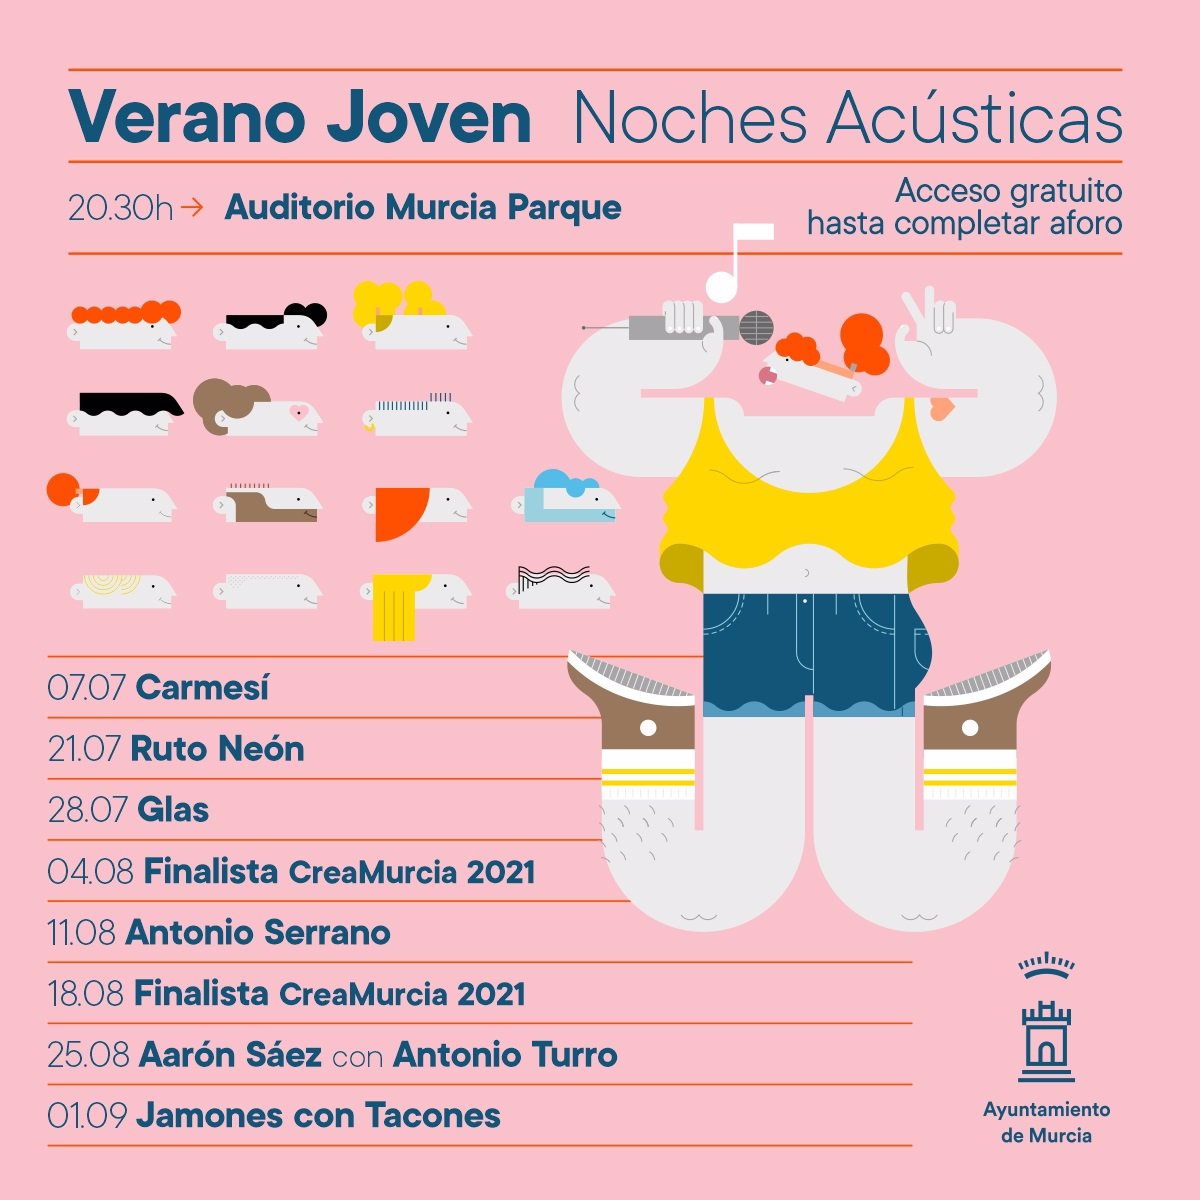 Las Noches Acústicas en el Verano Joven de Murcia